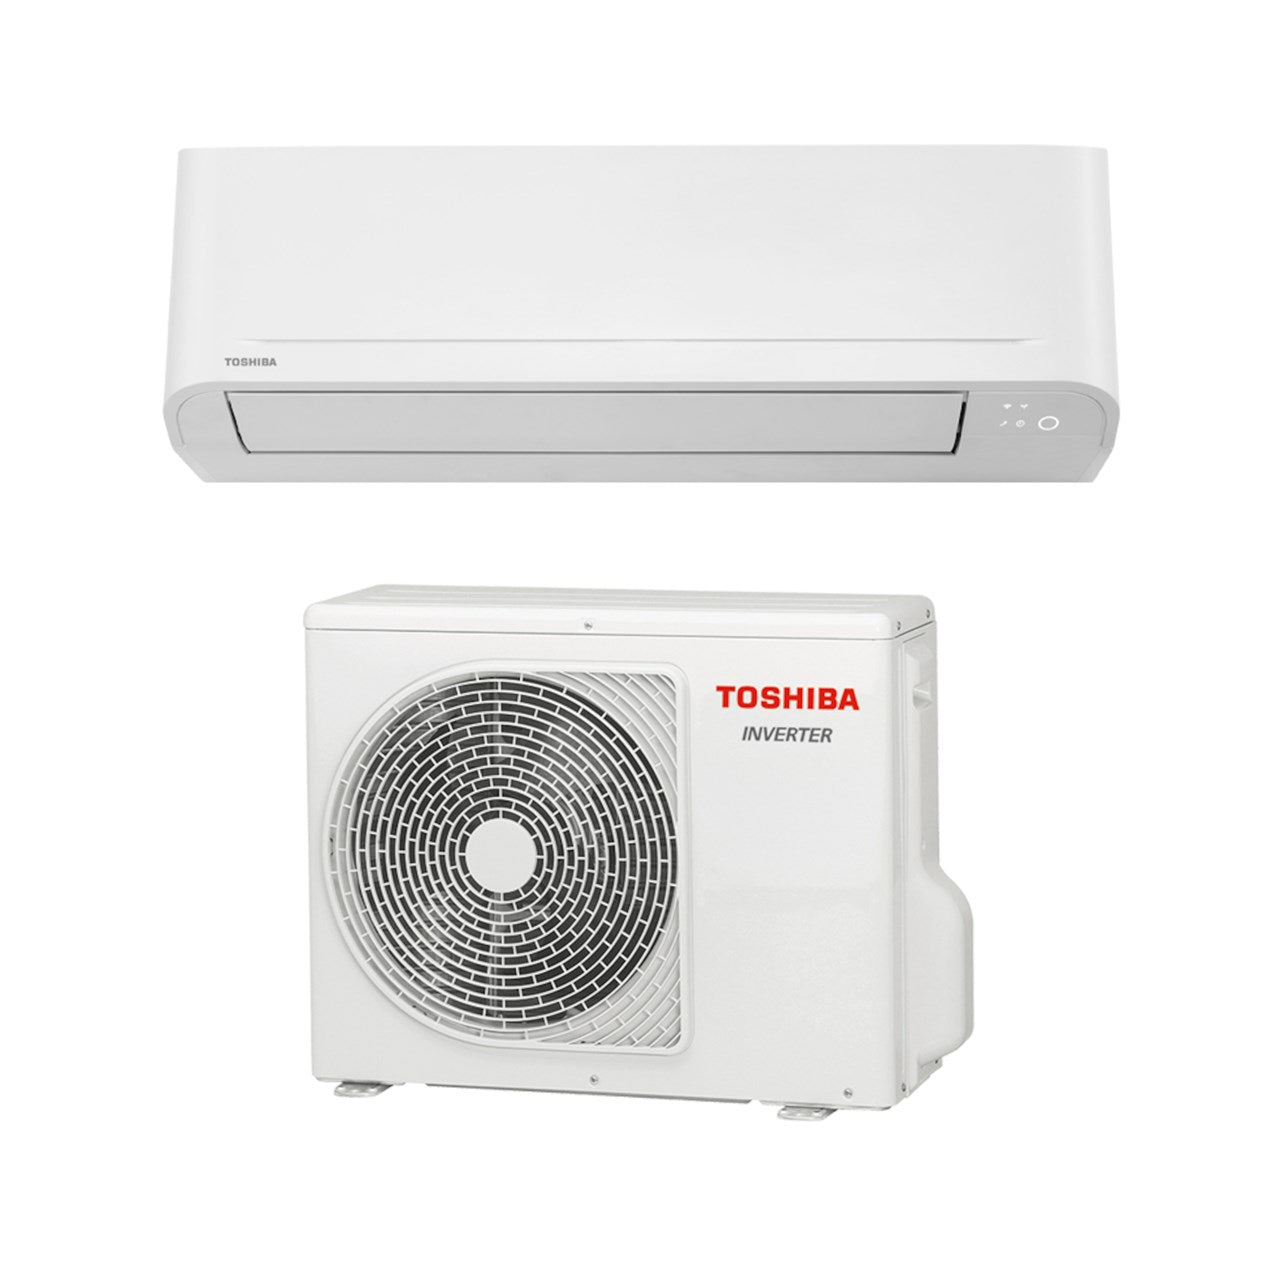 Toshiba Seiya AC - Kun effektiv kjøling Rimelig aircondition for behagelig innetemperatur Energiklasse A++ og SEER 7,0 for kjøling Kompakt og stillegående innedel med selvrensefunksjon Ypperlig til kjøling av soverom eller andre varmeeksponerte rom i boli